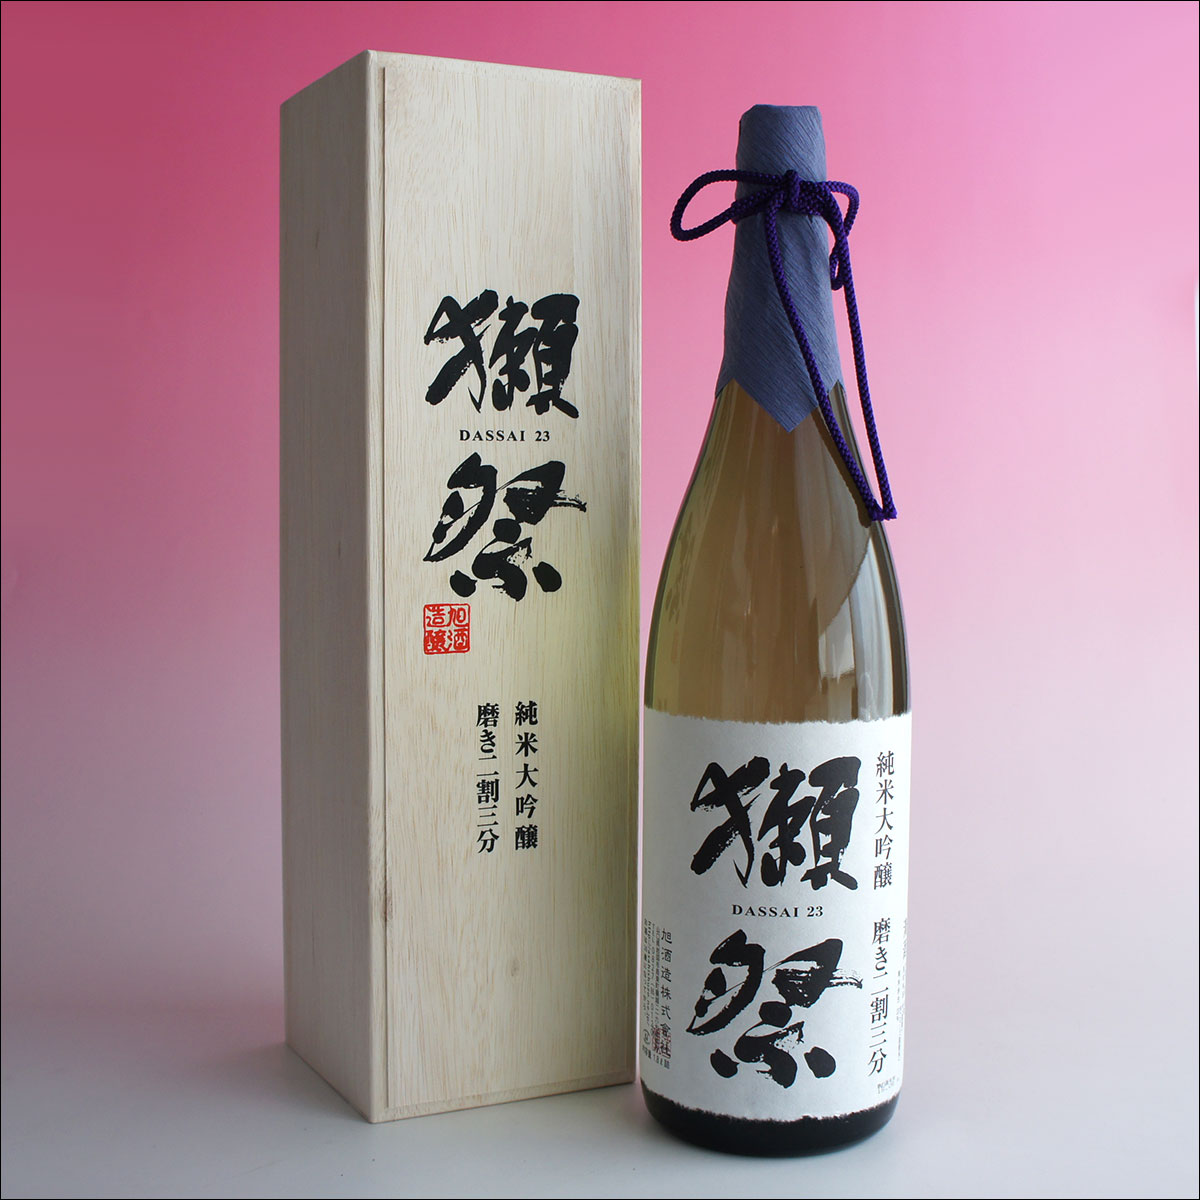 獺祭 木箱入り 純米大吟醸23 磨き二割三分 1800ml 日本酒 旭酒造